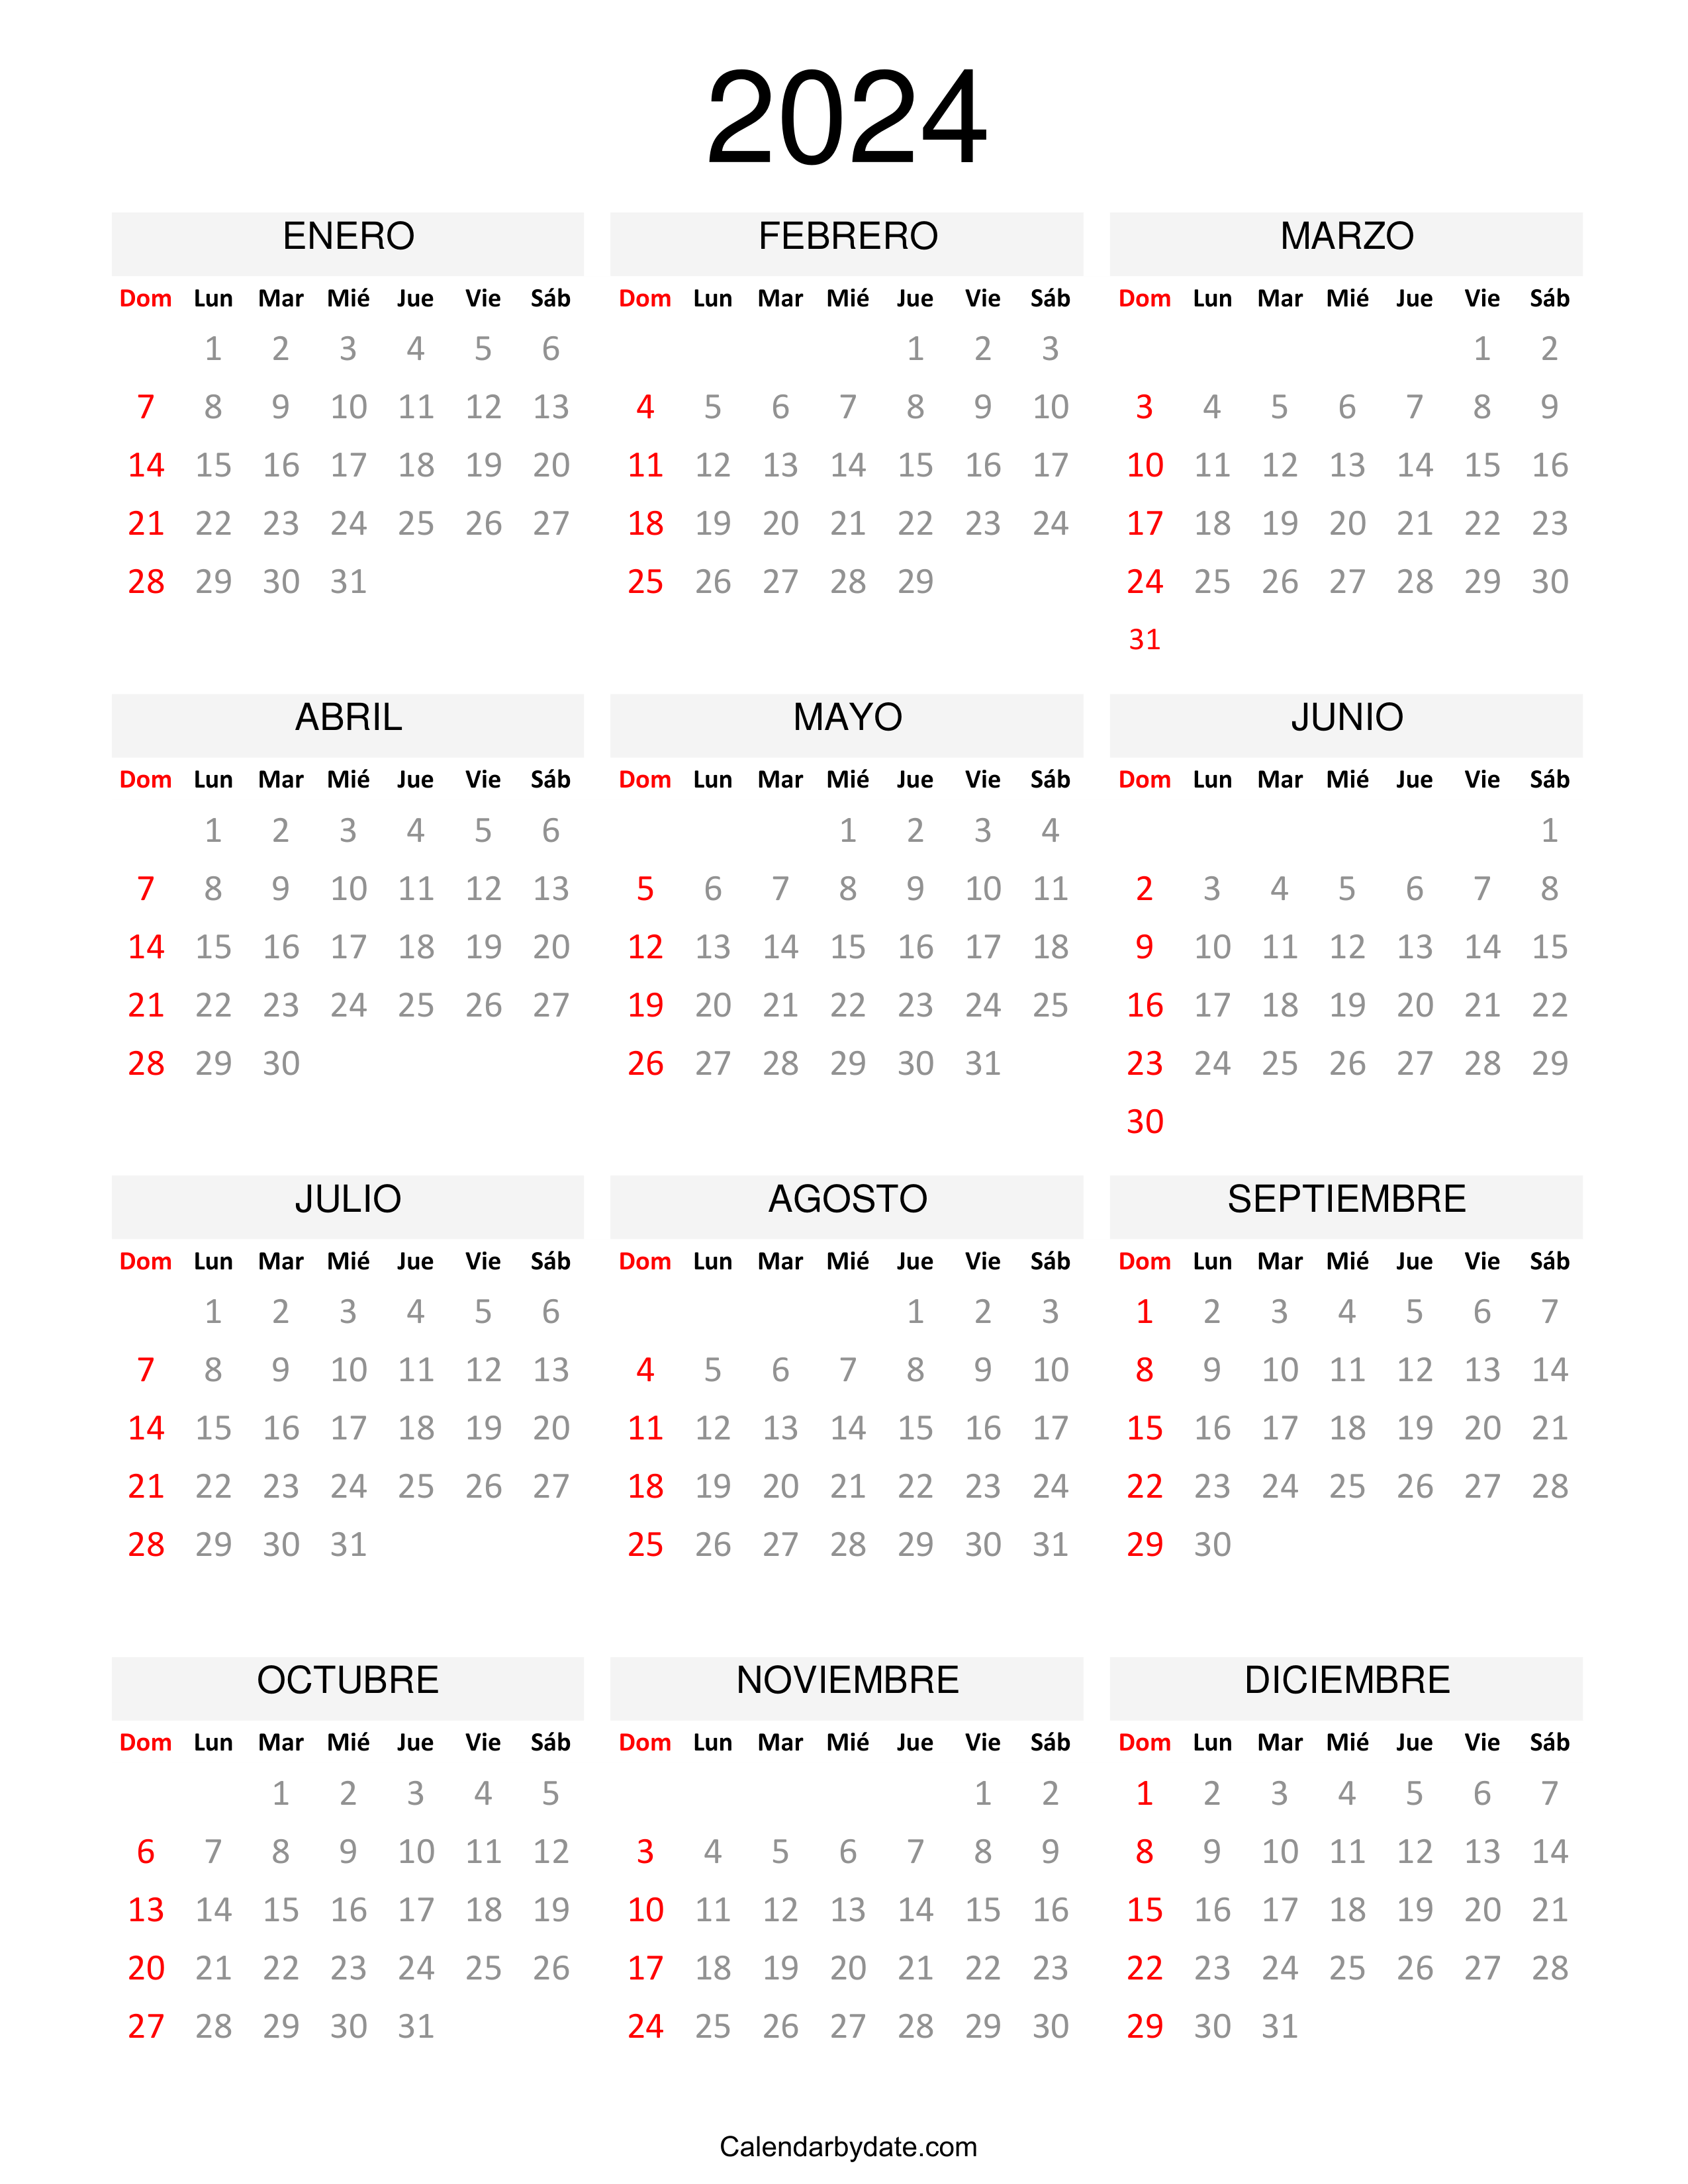 Calendario 2024 gratis en español.